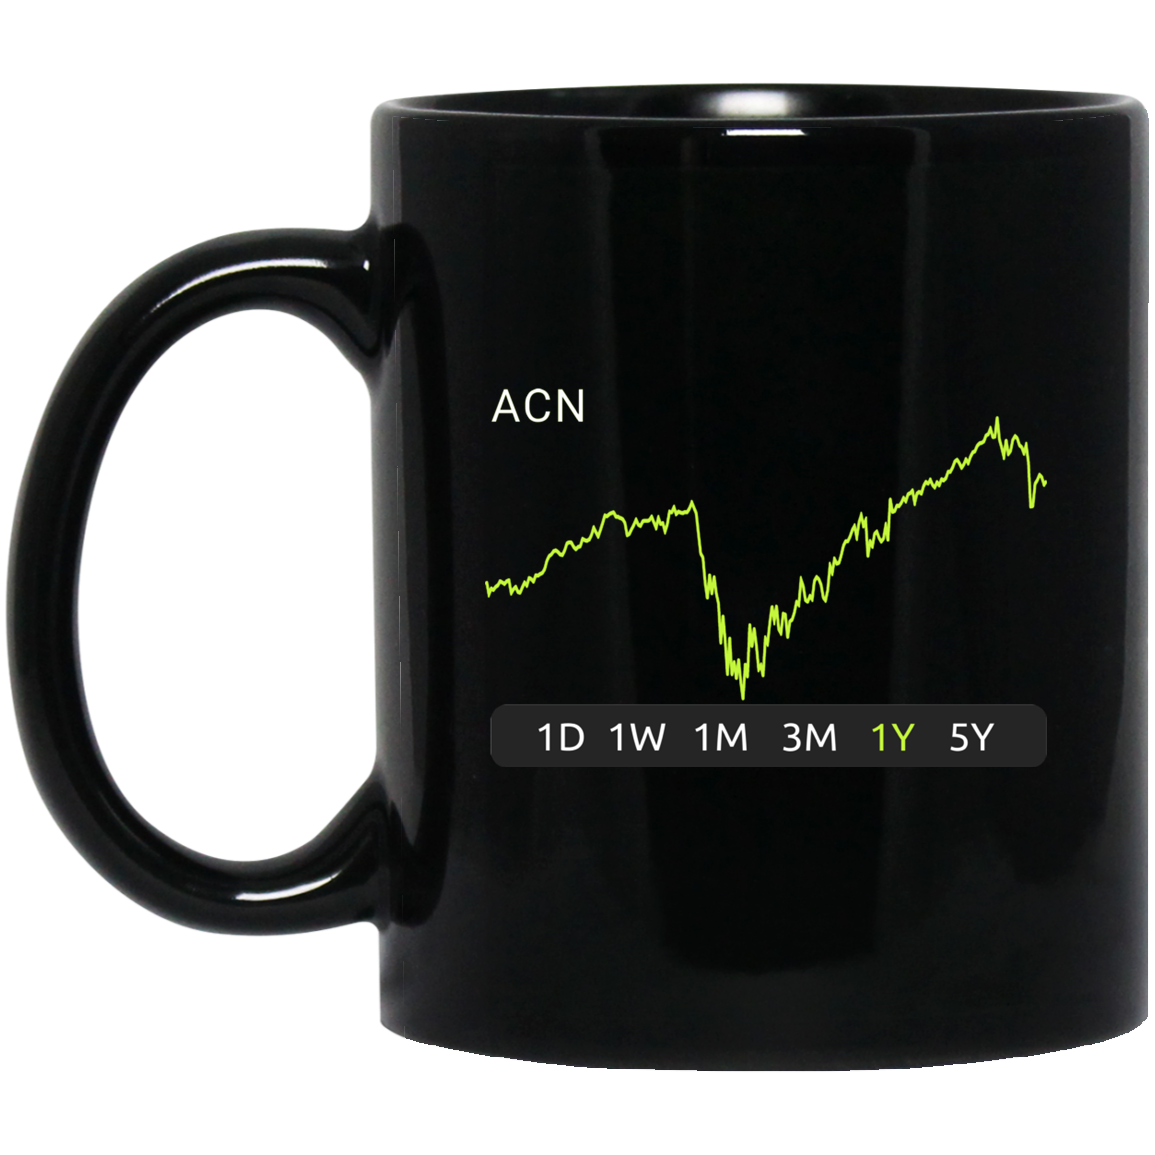 ACN Stock 1y Mug